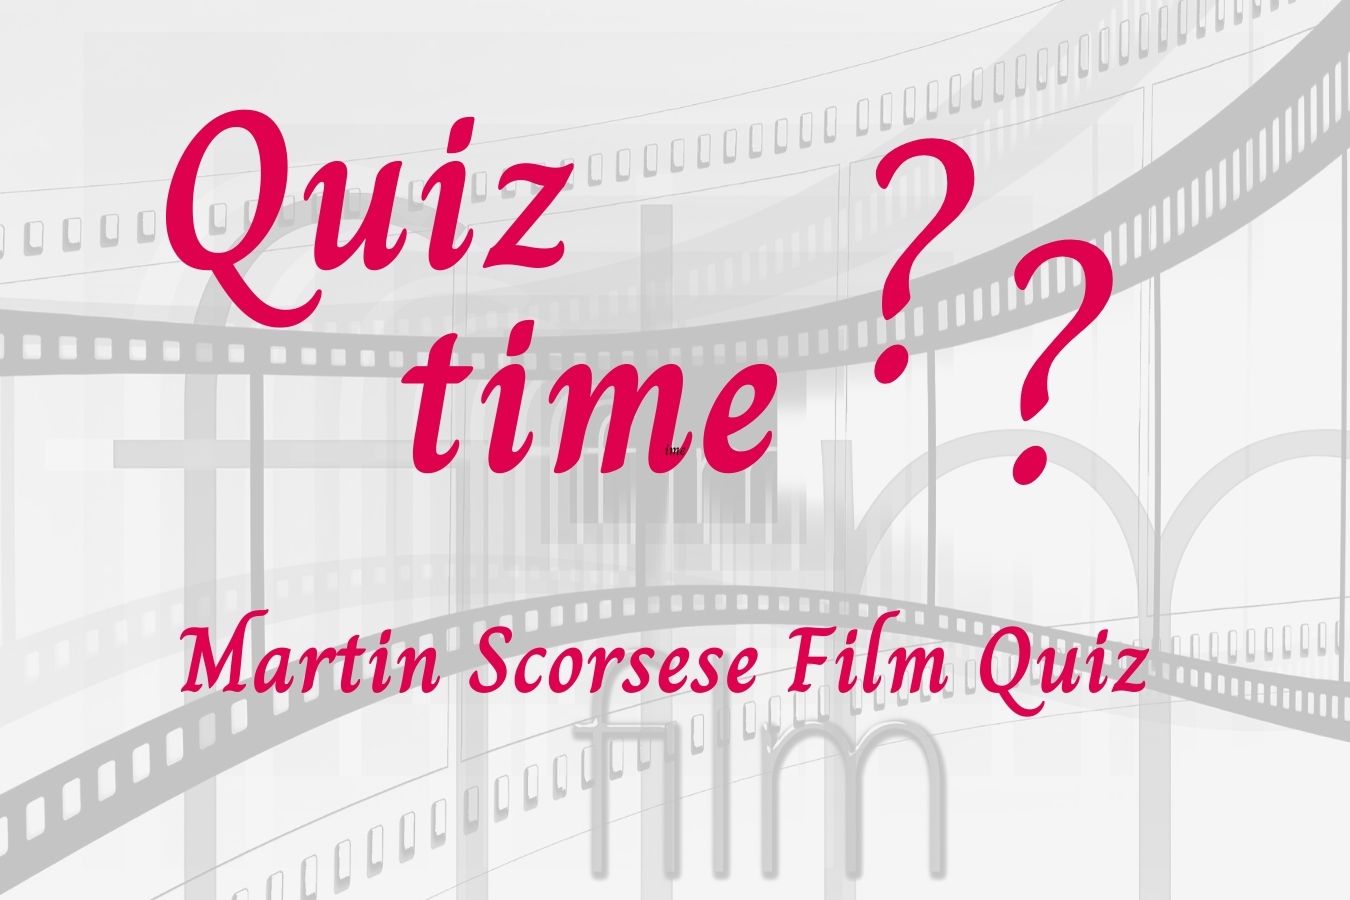 Martin Scorsese Film Quiz